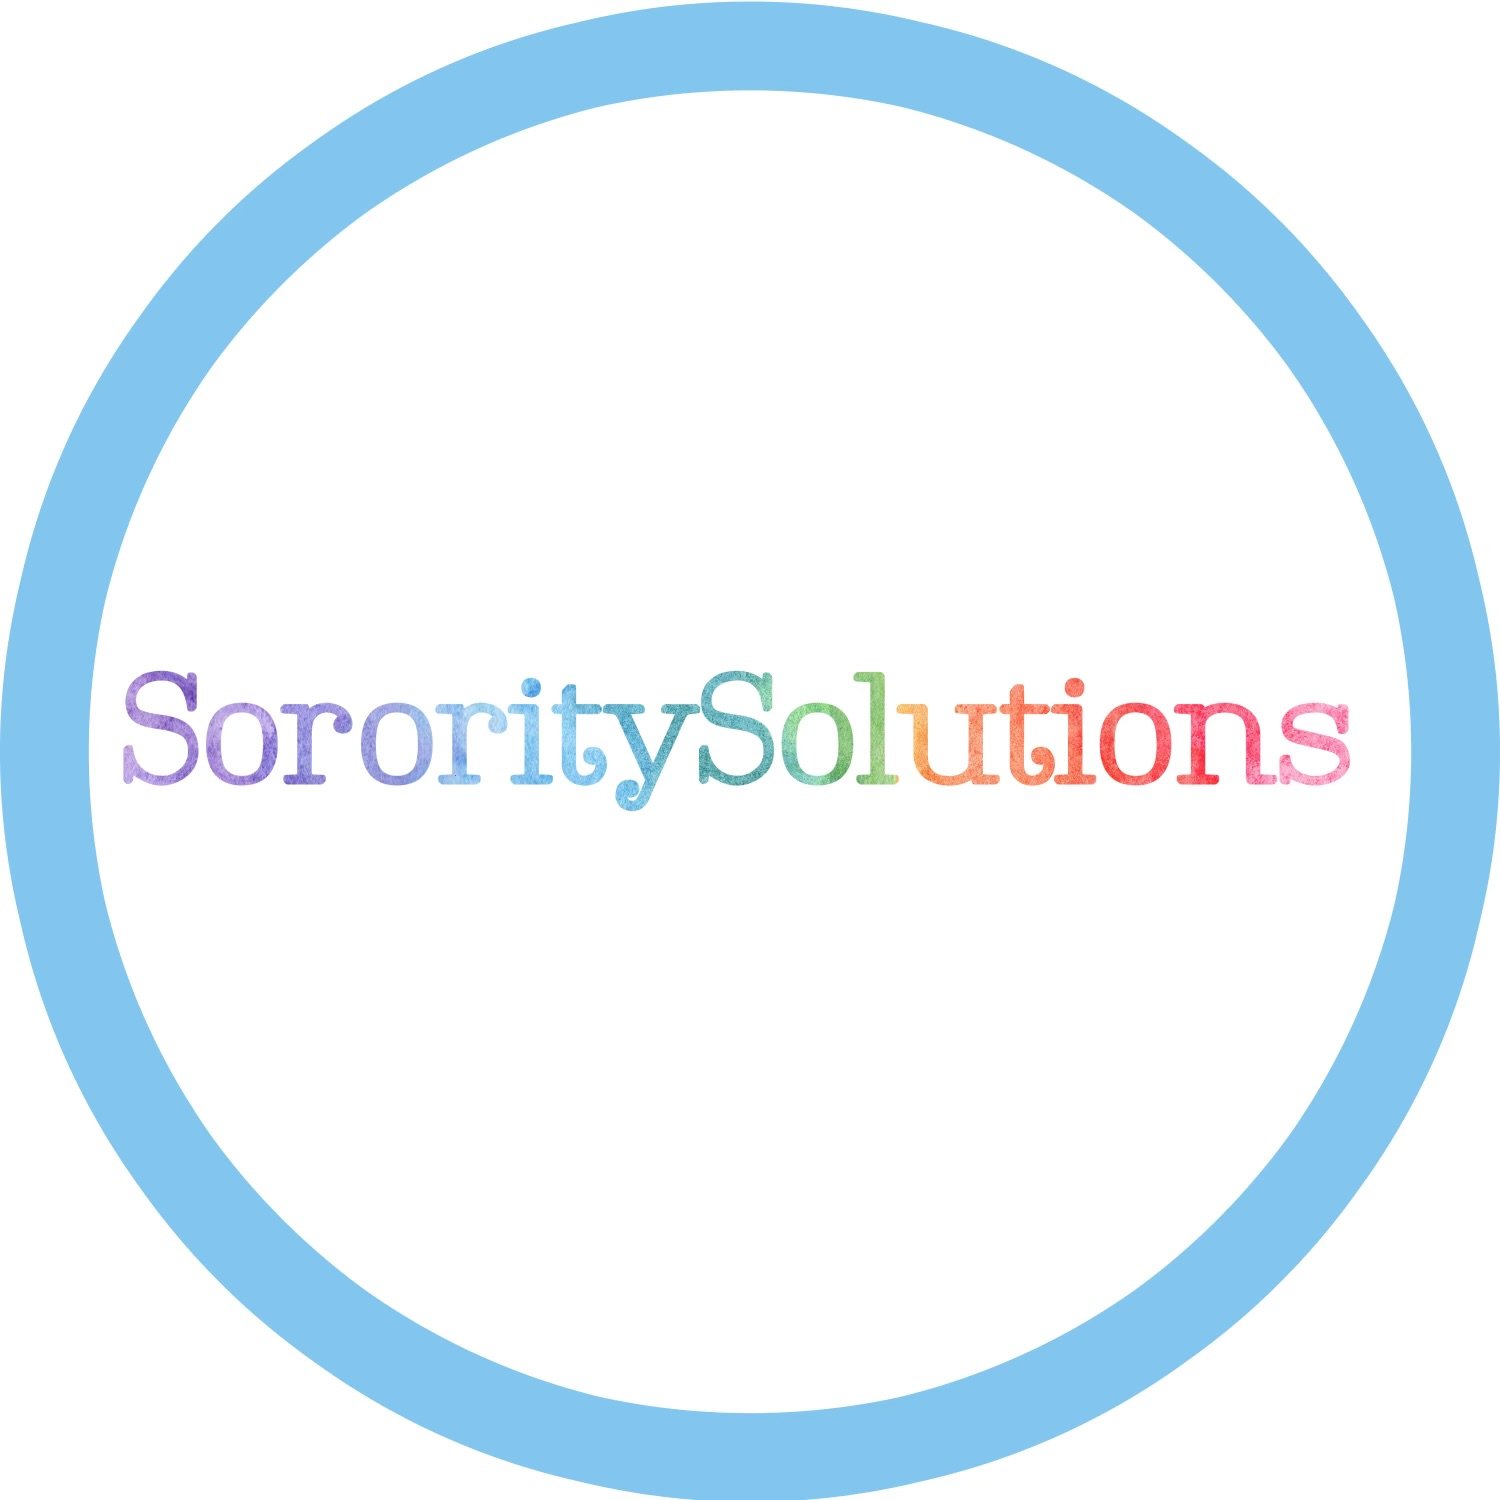  SororitySolutions